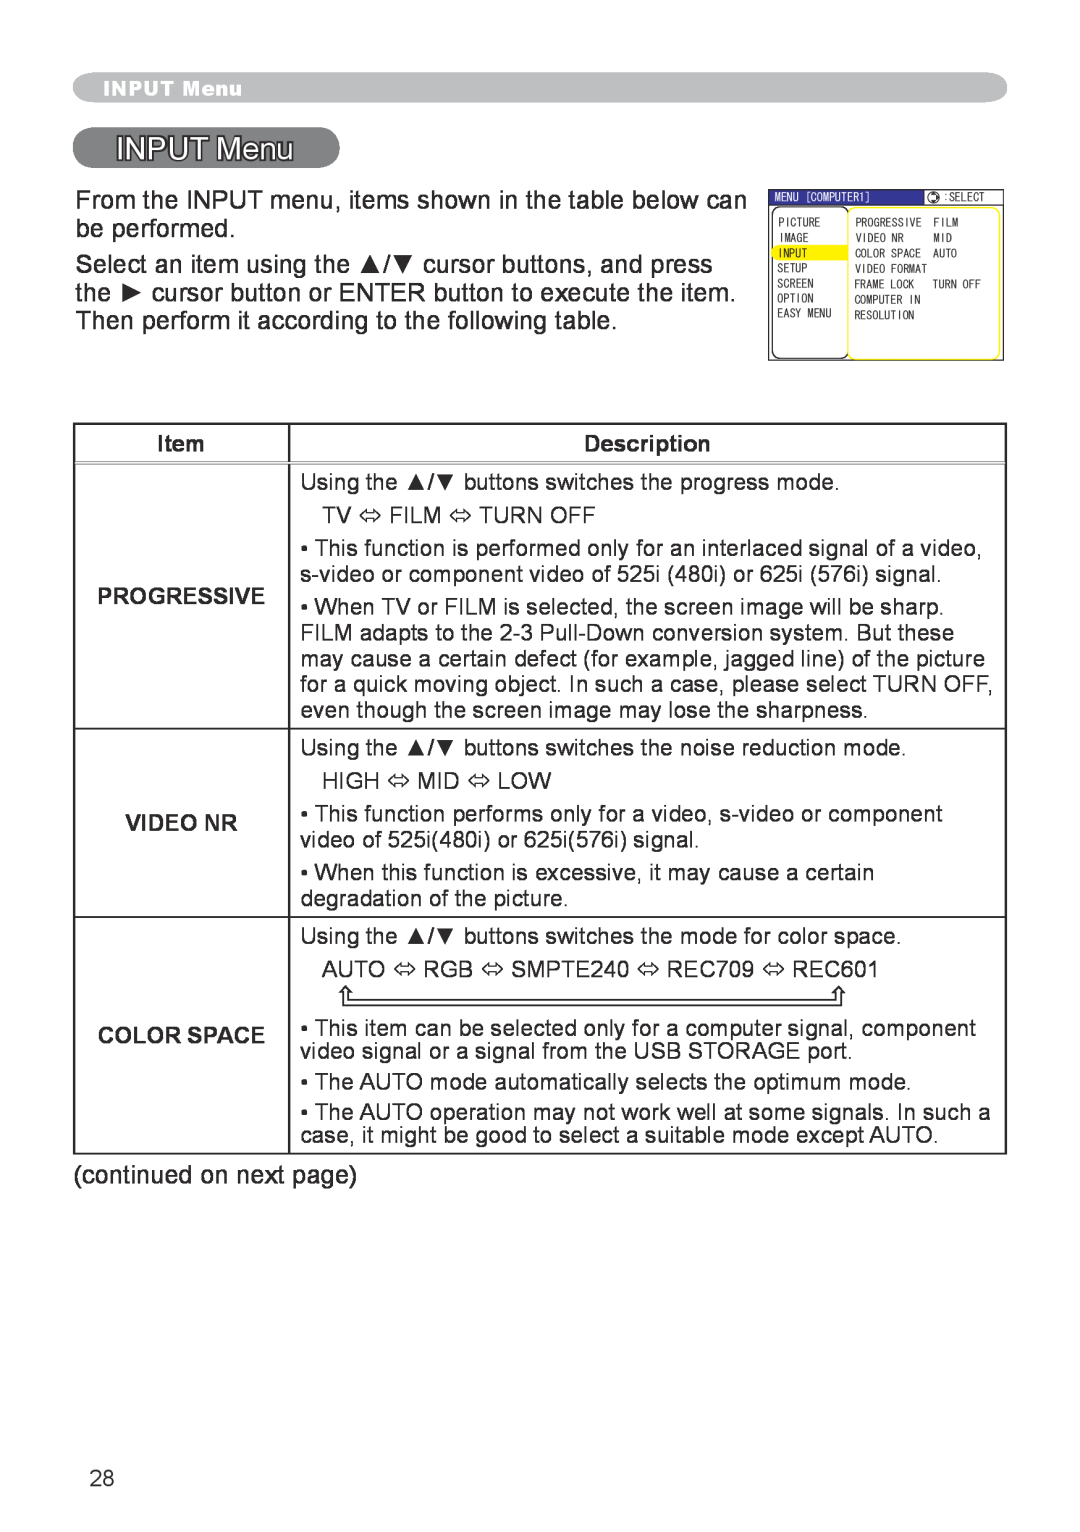 Apple CPX5, CPX1 user manual INPUT Menu, Description, Progressive, Video Nr, Color Space 